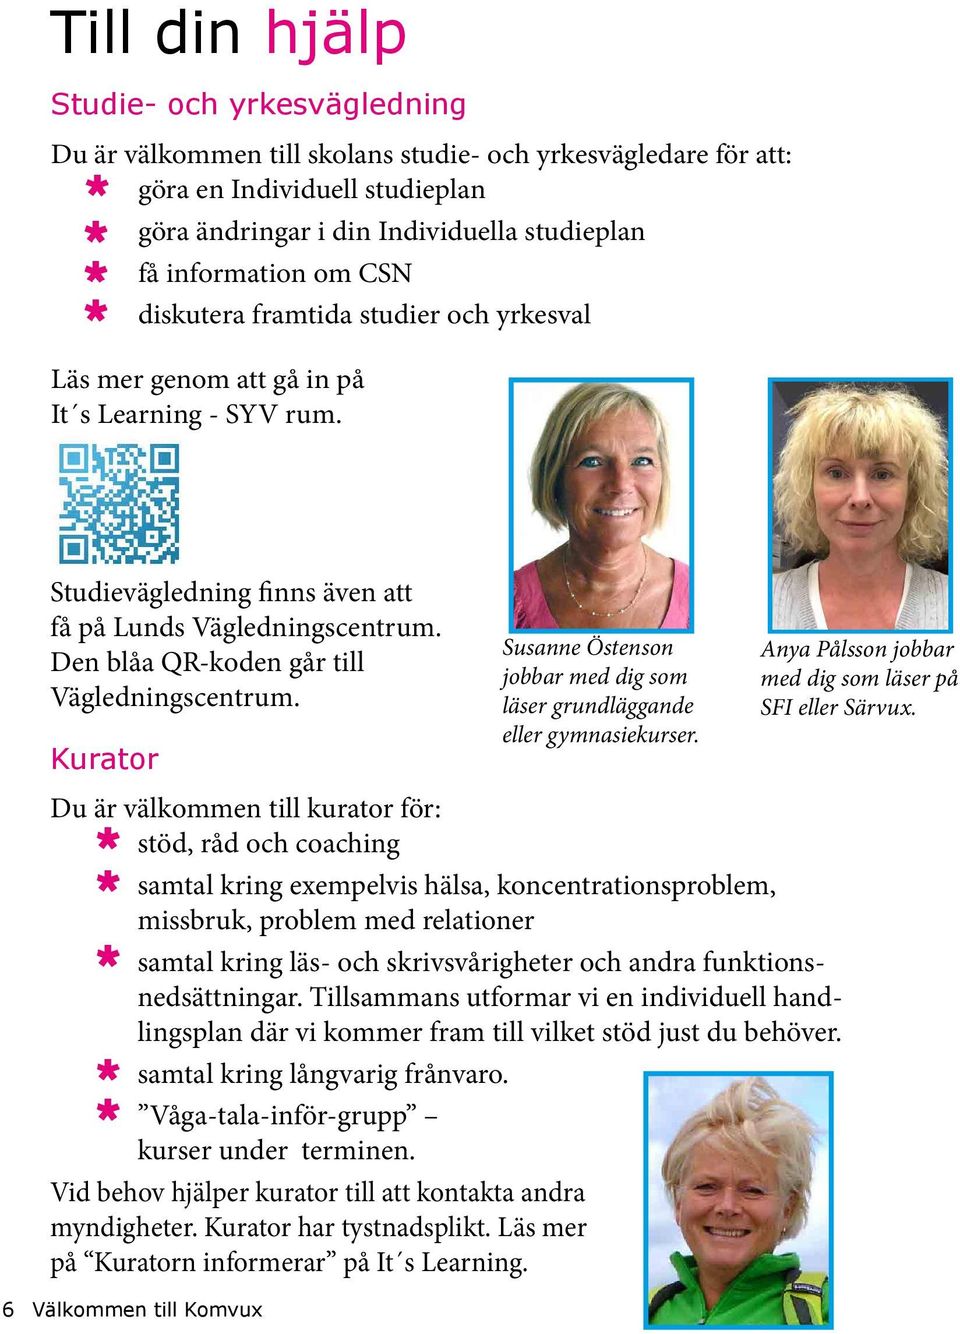 Den blåa QR-koden går till Vägledningscentrum. Kurator Susanne Östenson jobbar med dig som läser grundläggande eller gymnasiekurser.